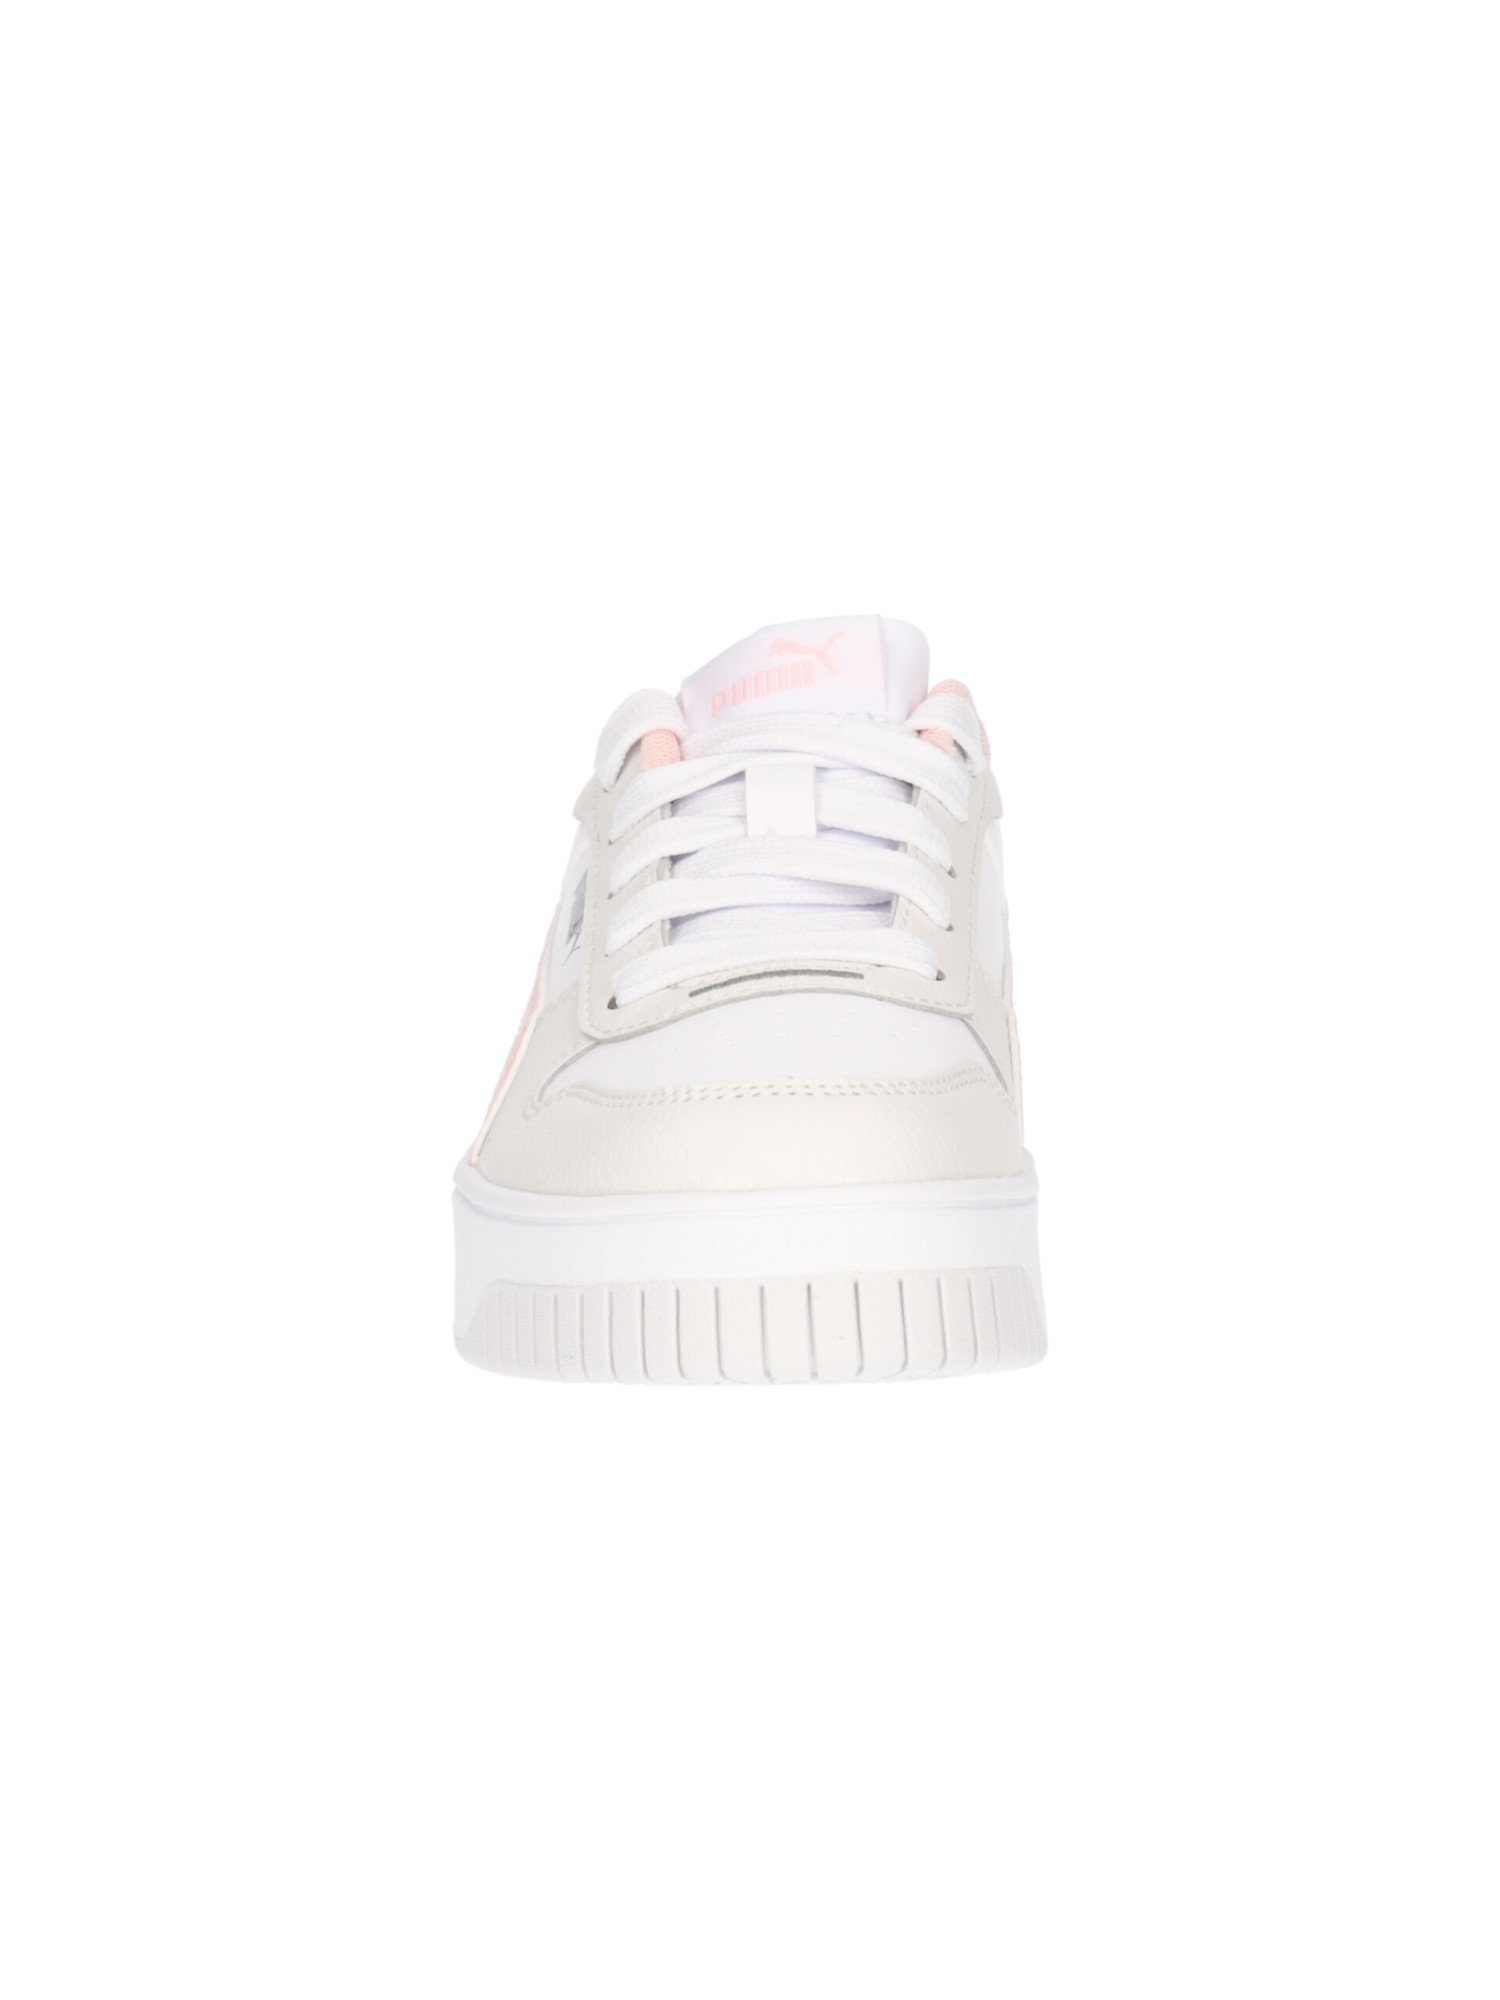 sneaker-puma-carina-da-bambina-bianca-e-rosa